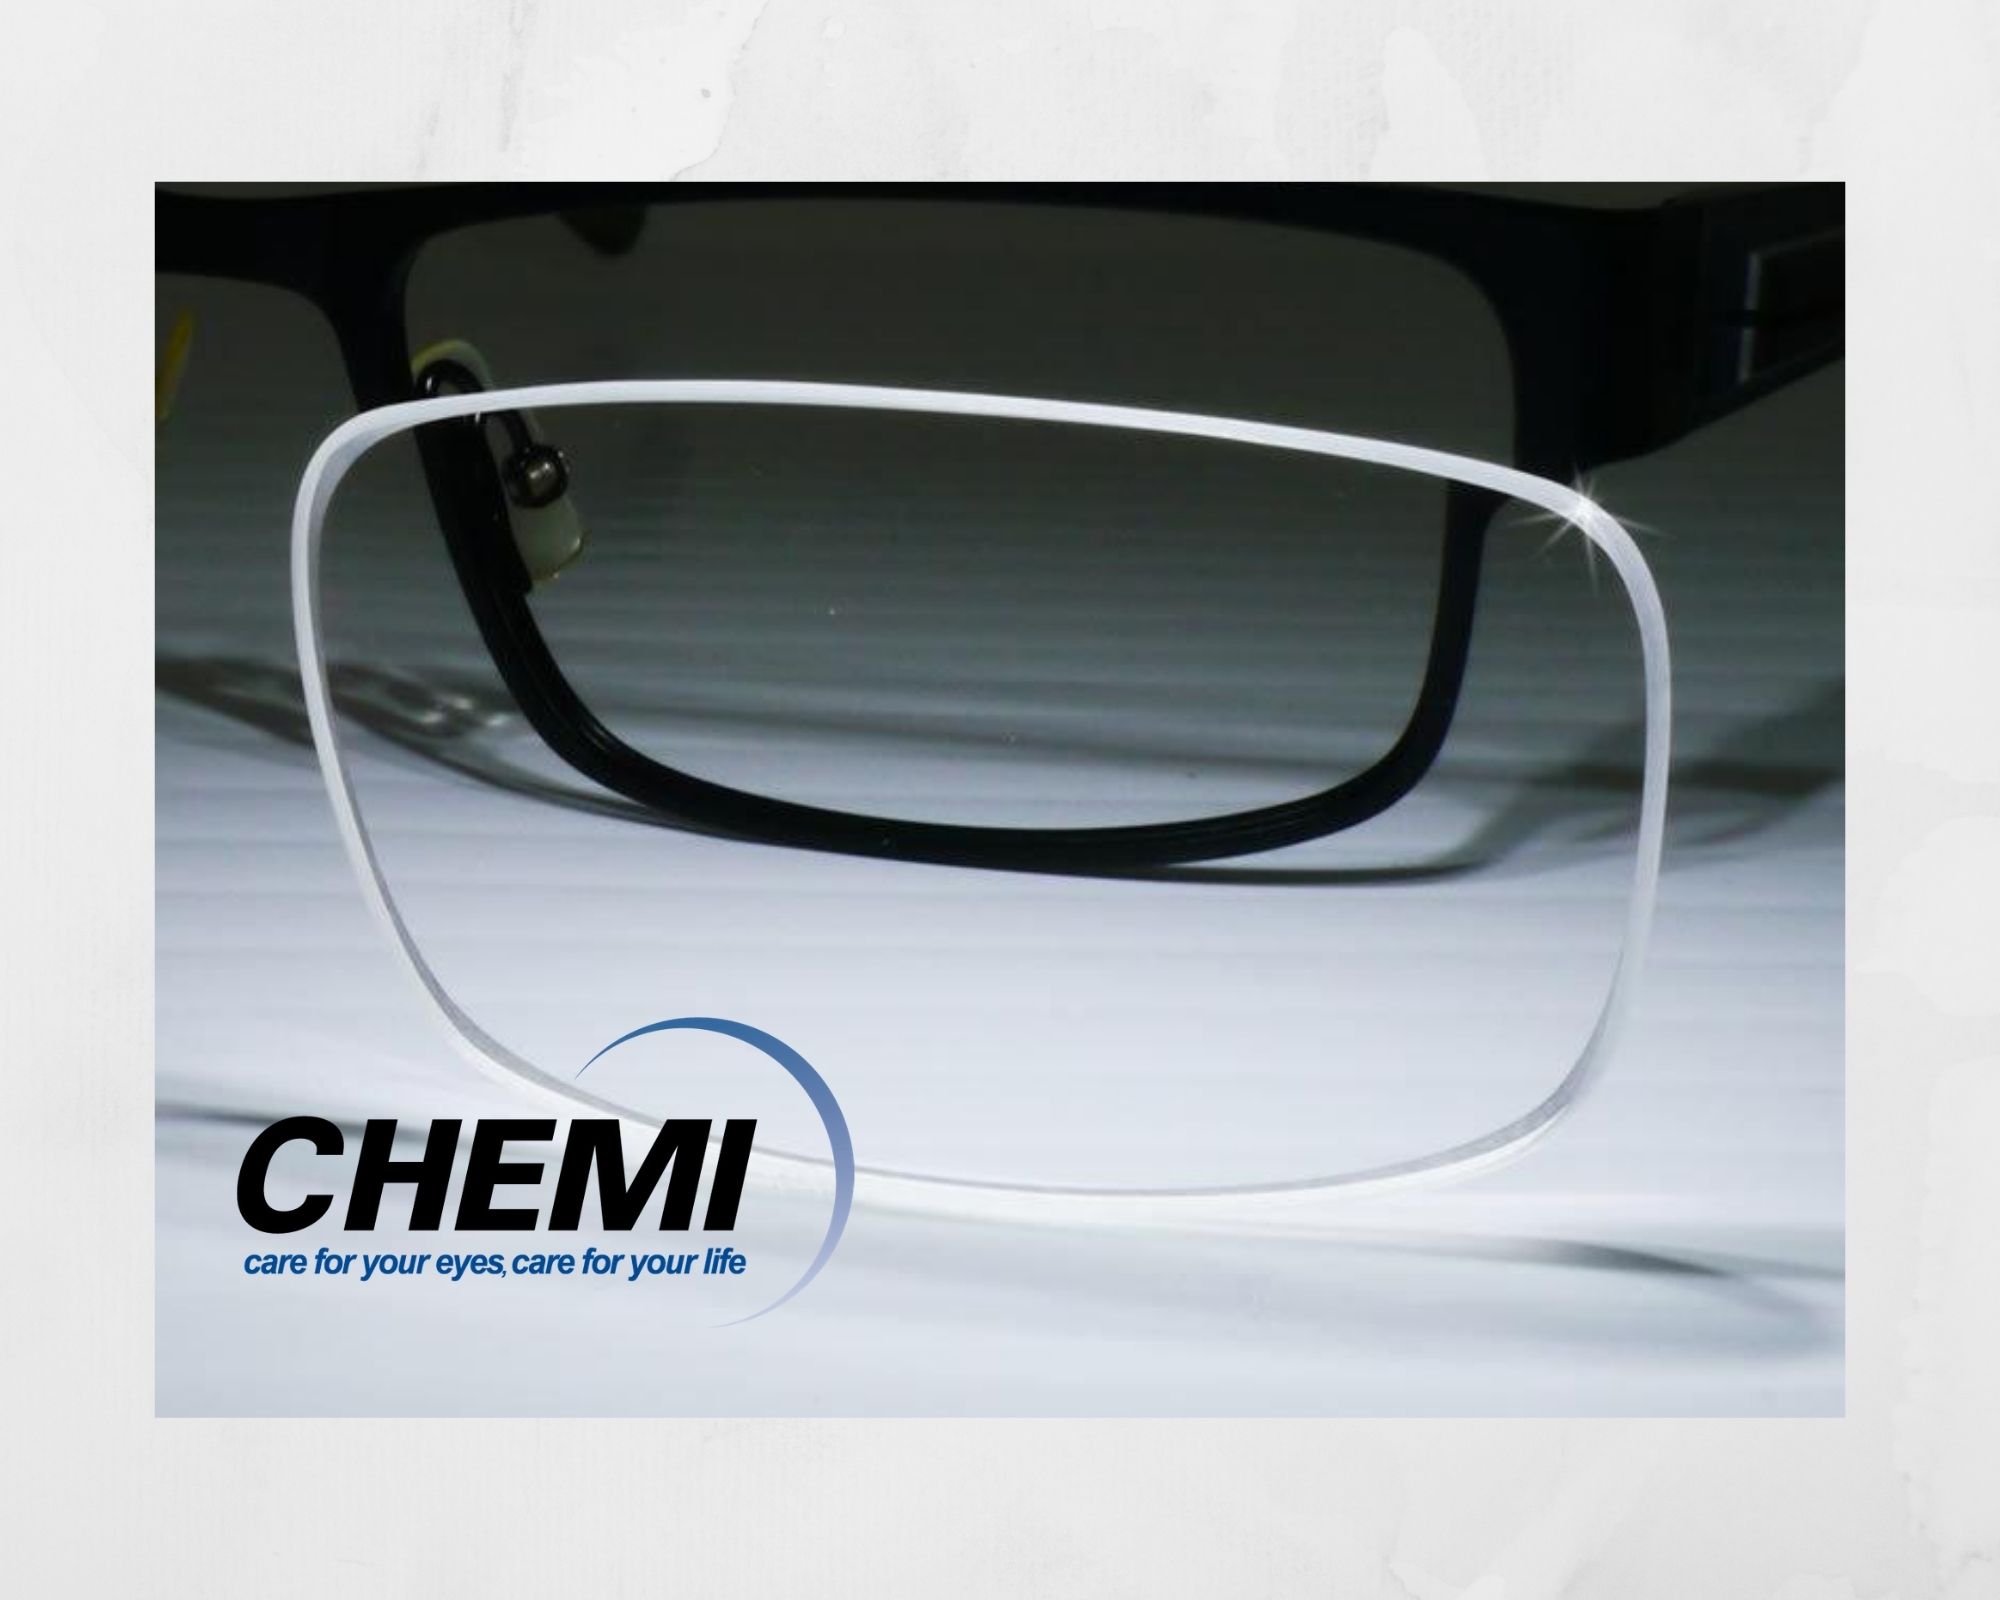 Tròng kính Chemi là thương hiệu mắt kính của Hàn Quốc